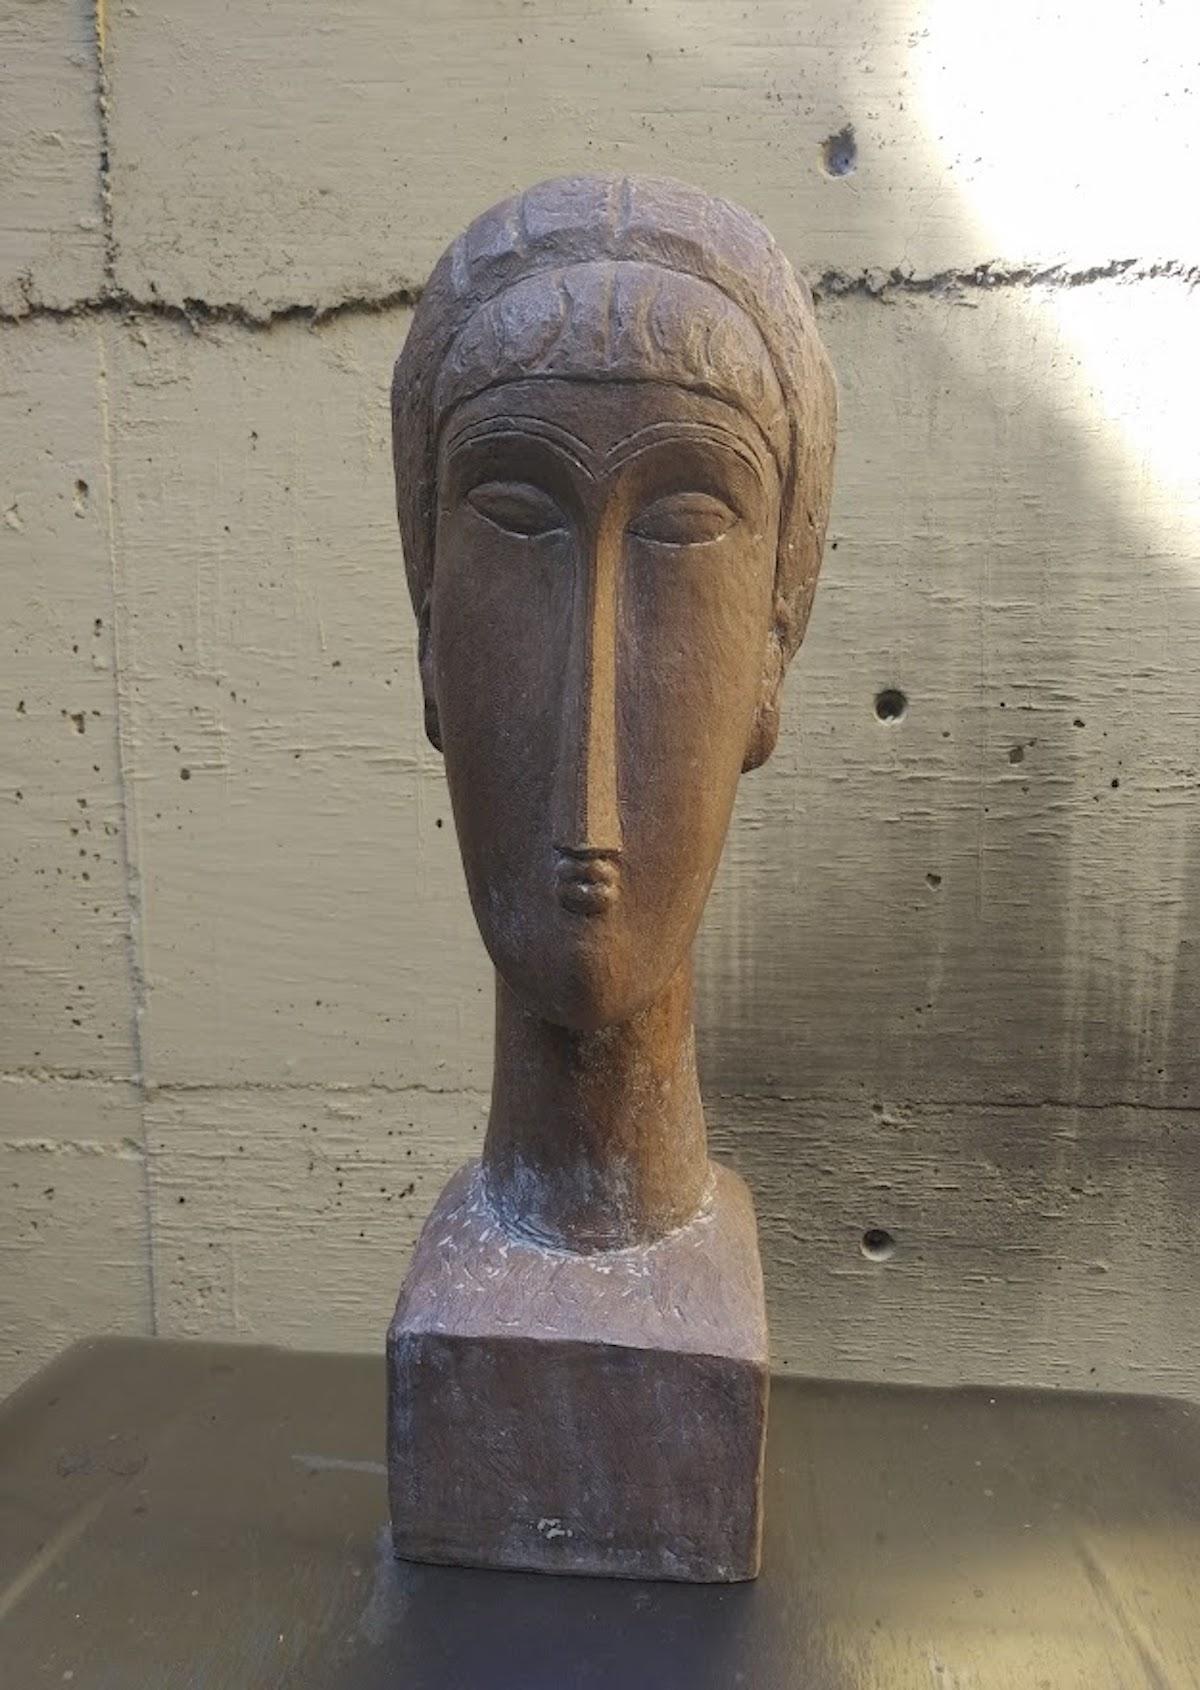 Austin Productions 1961, nach Modigliani, Skulptur Tete de Femme, limitierte Auflage. (Moderne), Sculpture, von Amedeo Modigliani